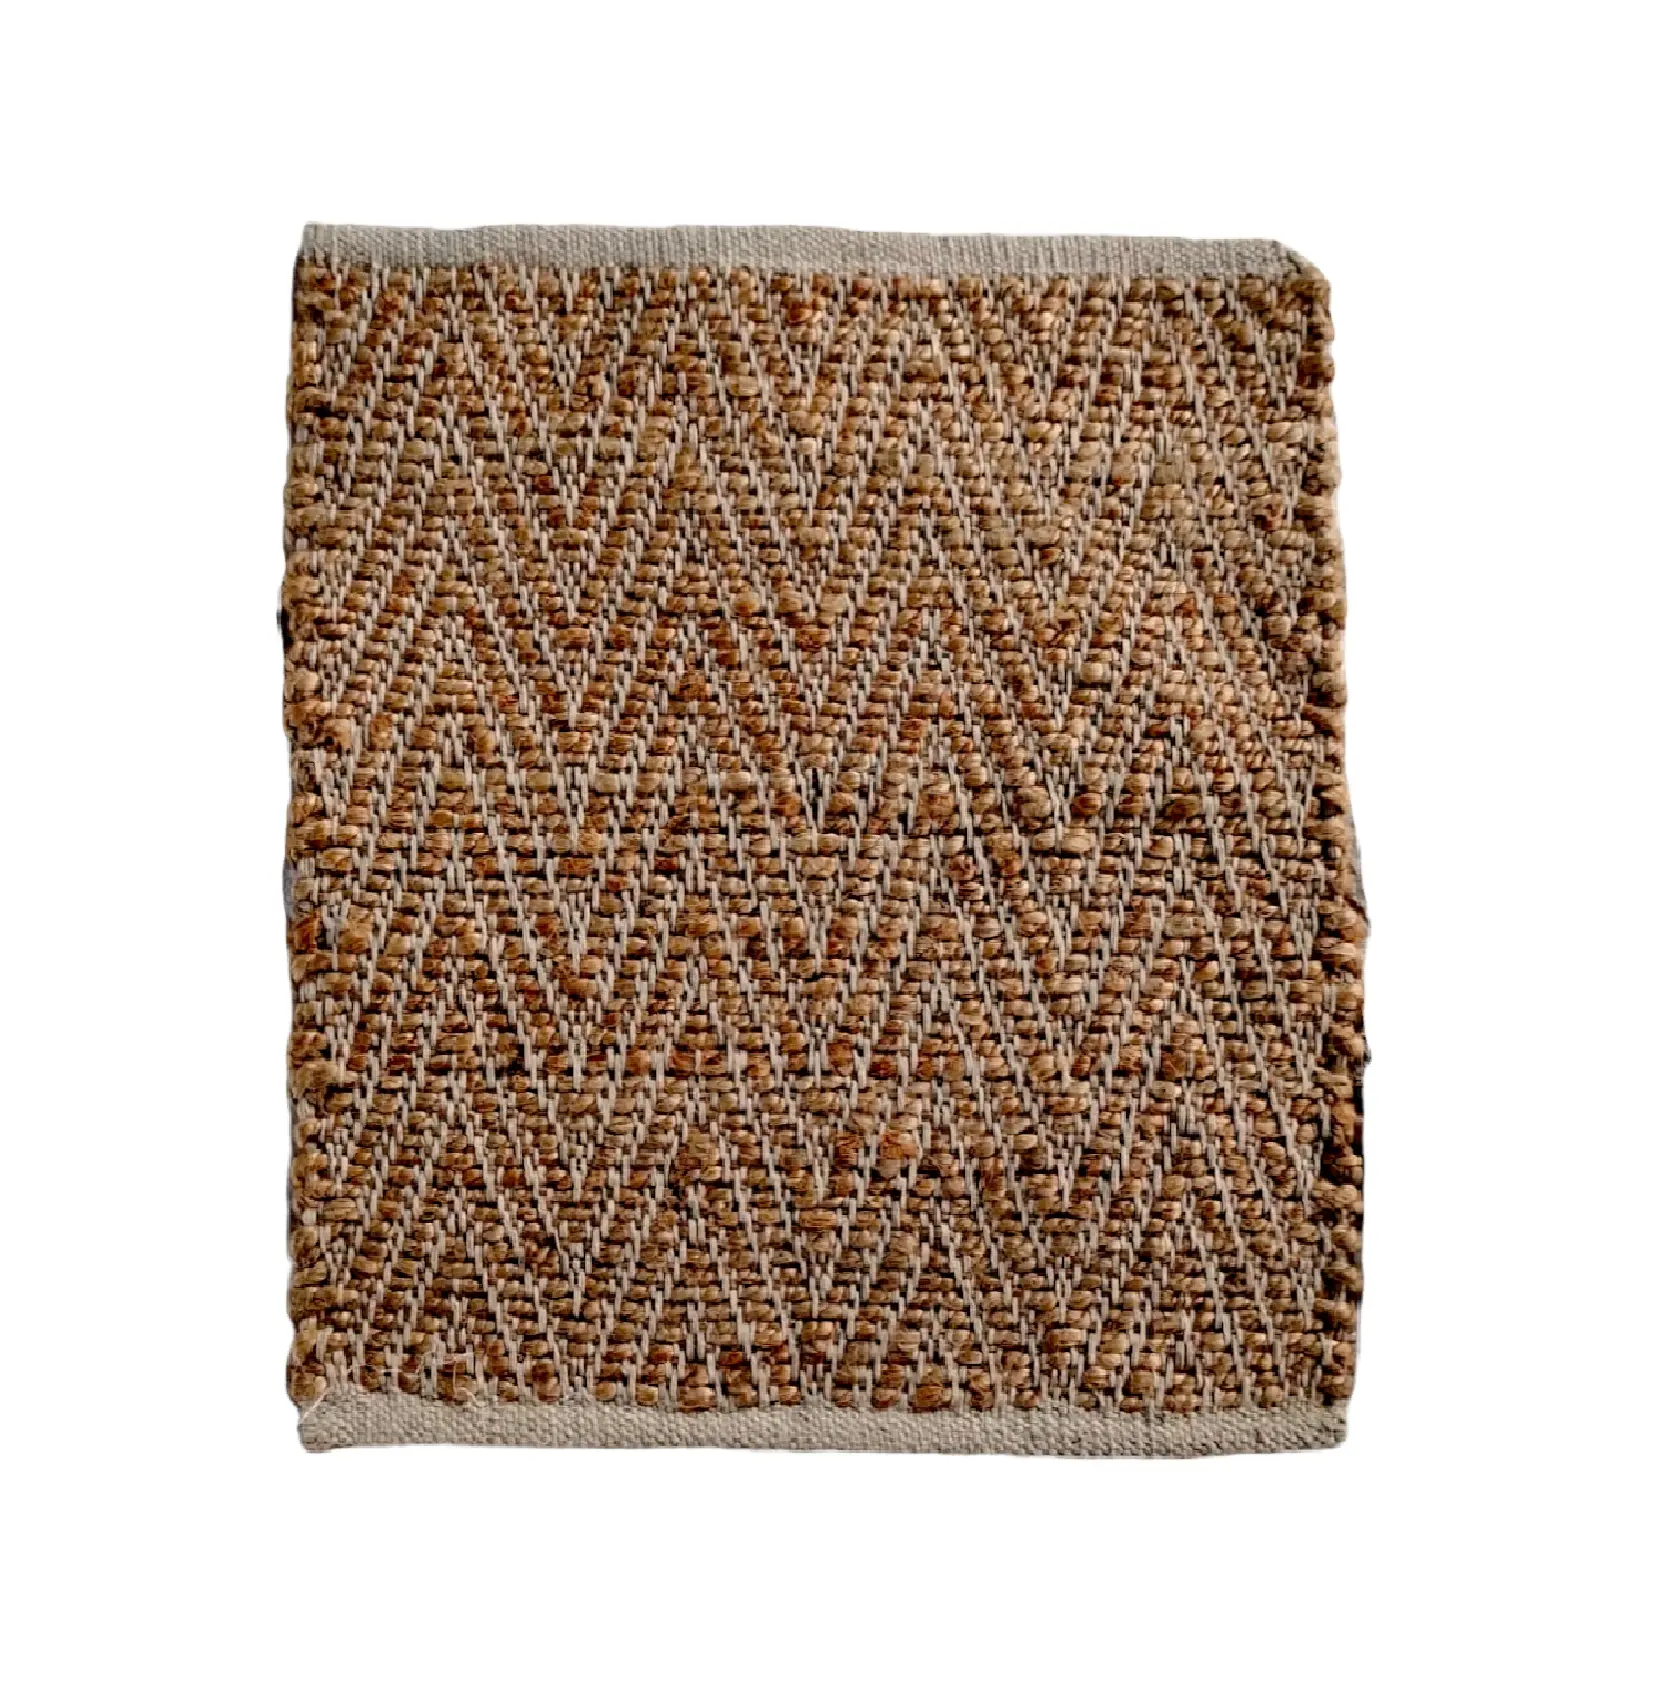 Karpet rami sisal rami kustom dengan harga grosir karpet India buatan tangan alami anyaman datar rami karpet masuk rumah